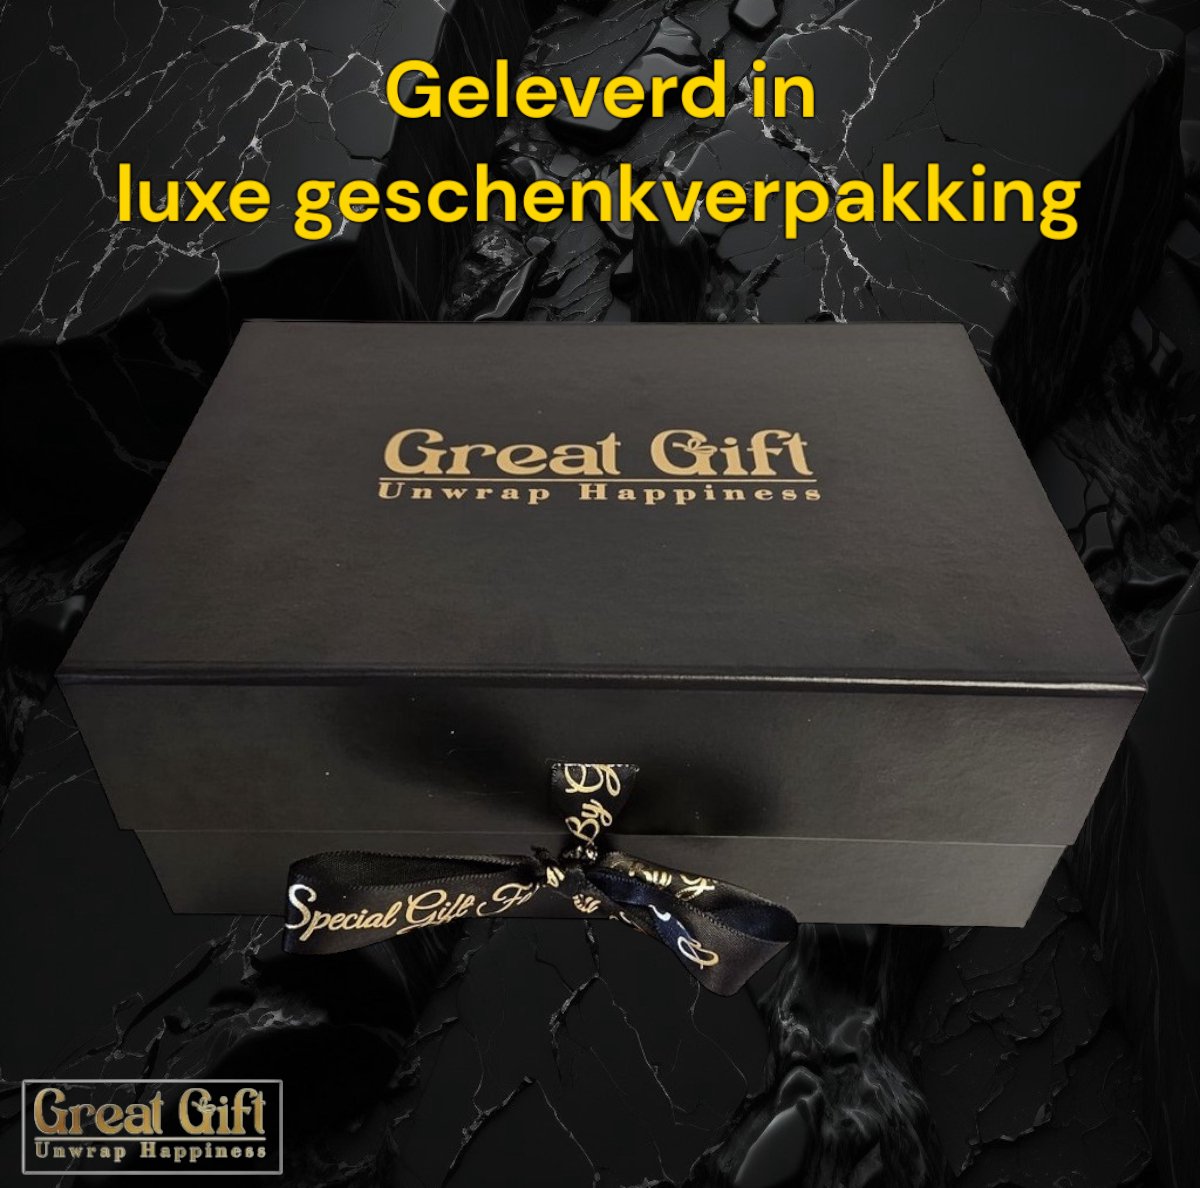 GreatGift® - Coffret cadeau pour lui - Coffret cadeau Adidas - Ferrero  Rocher 